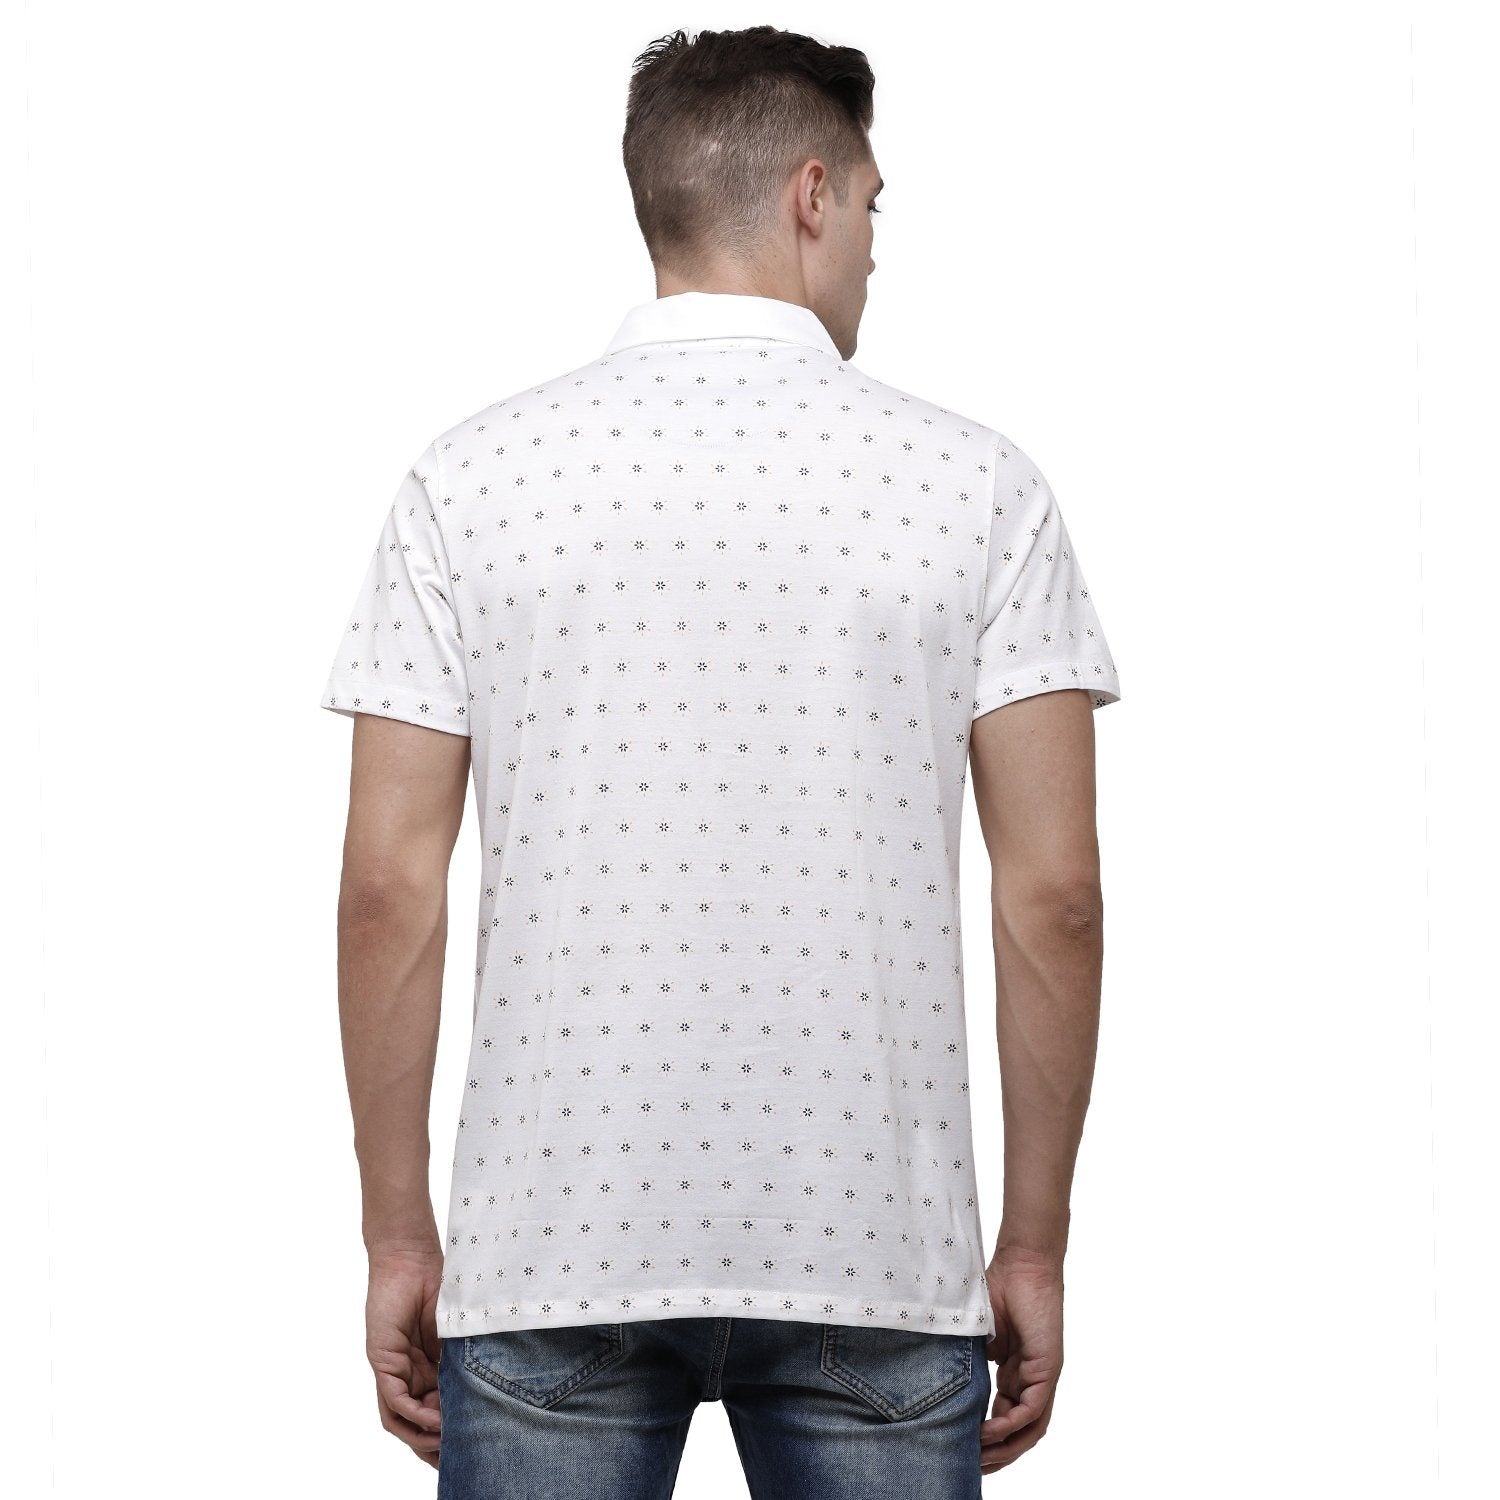 SWISS CLUB Mens Printed Polo Neck Half Sleeve Slim Fit 100% Cotton White Fashion T-Shirt ( SCKS-03 A-SF-HS-SH ) T-shirt Swiss Club 